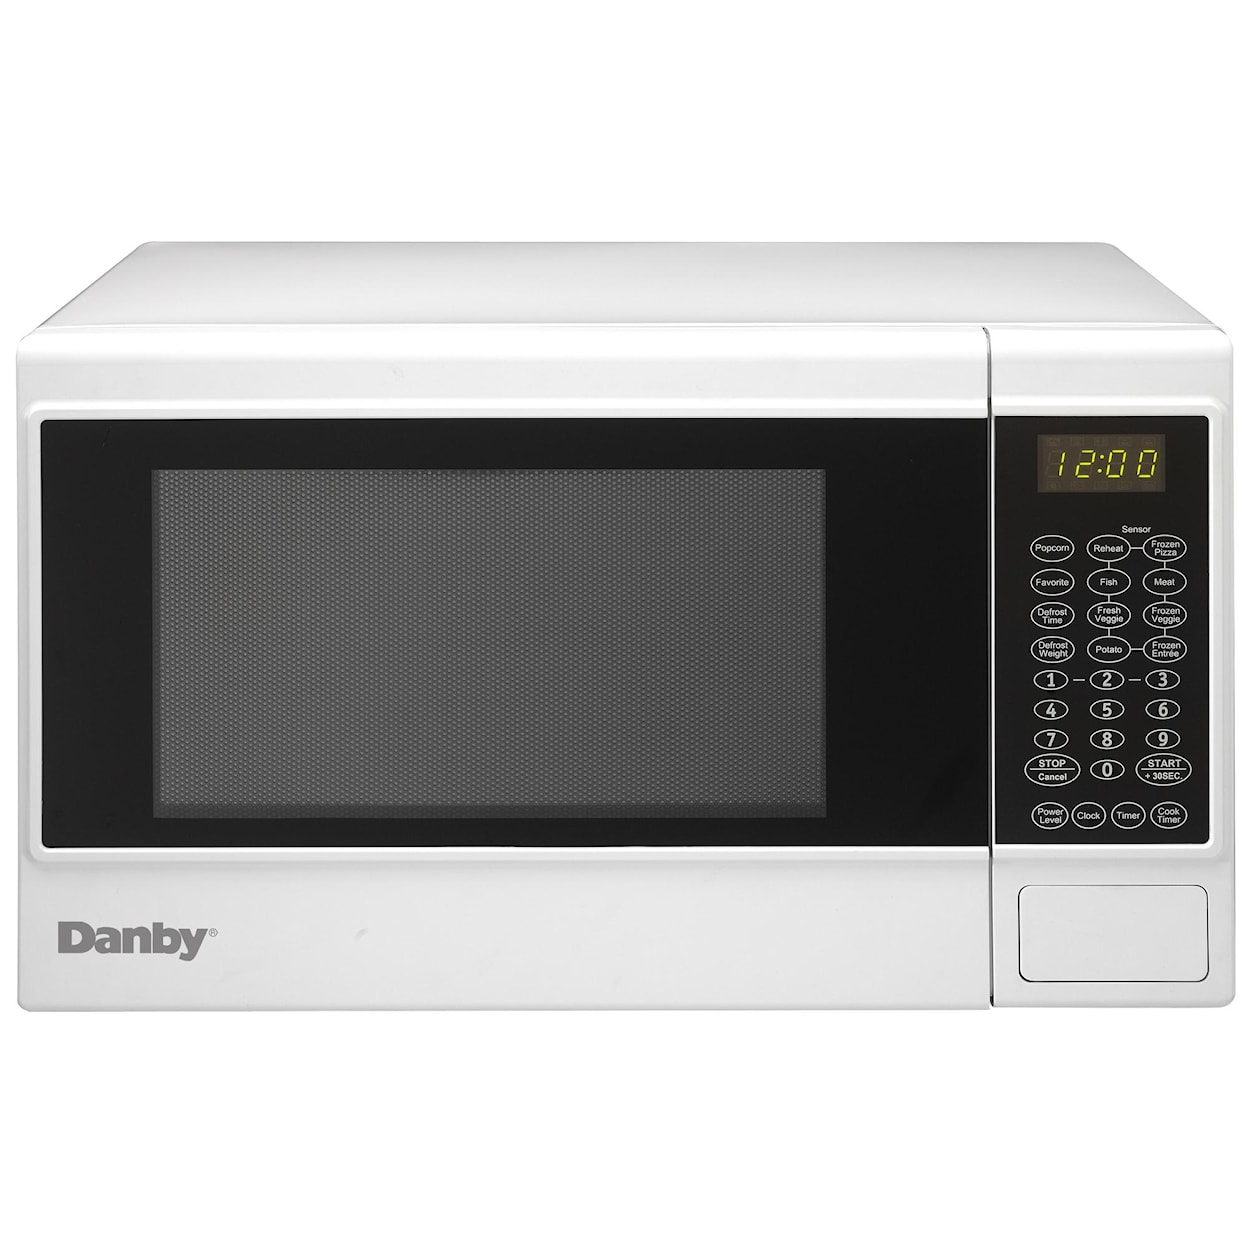 Danby Microwaves 1.4 Cu. Ft. Countertop Microwave